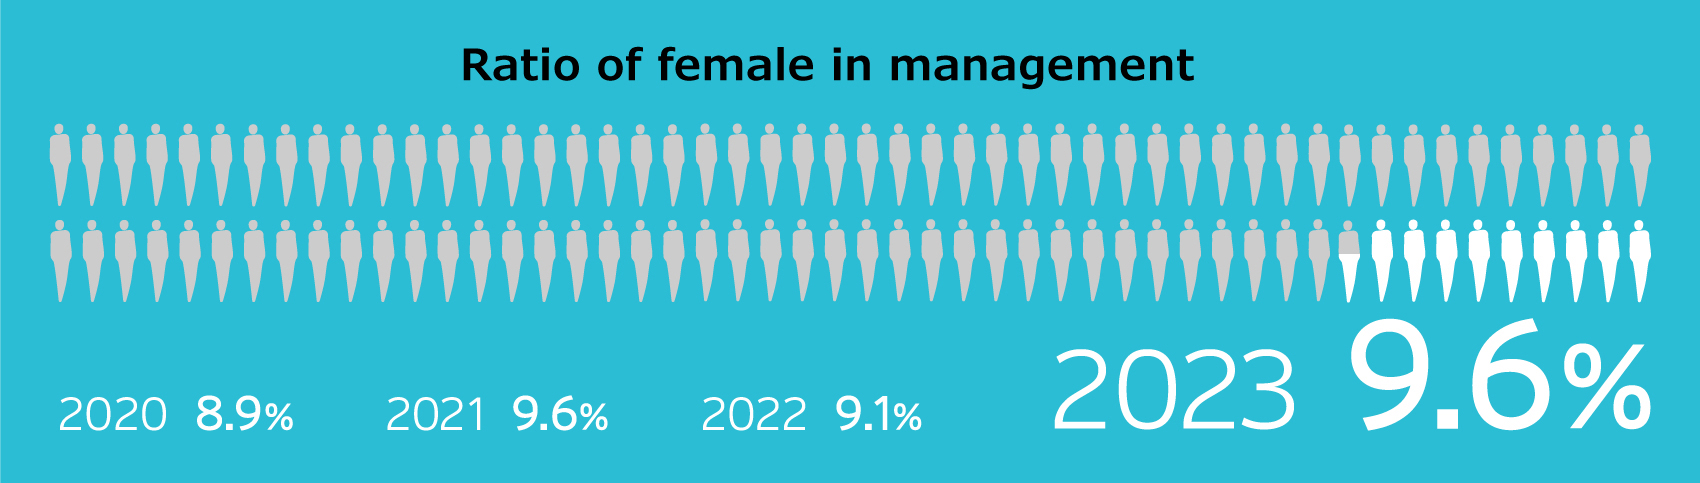 Ratio of female in management